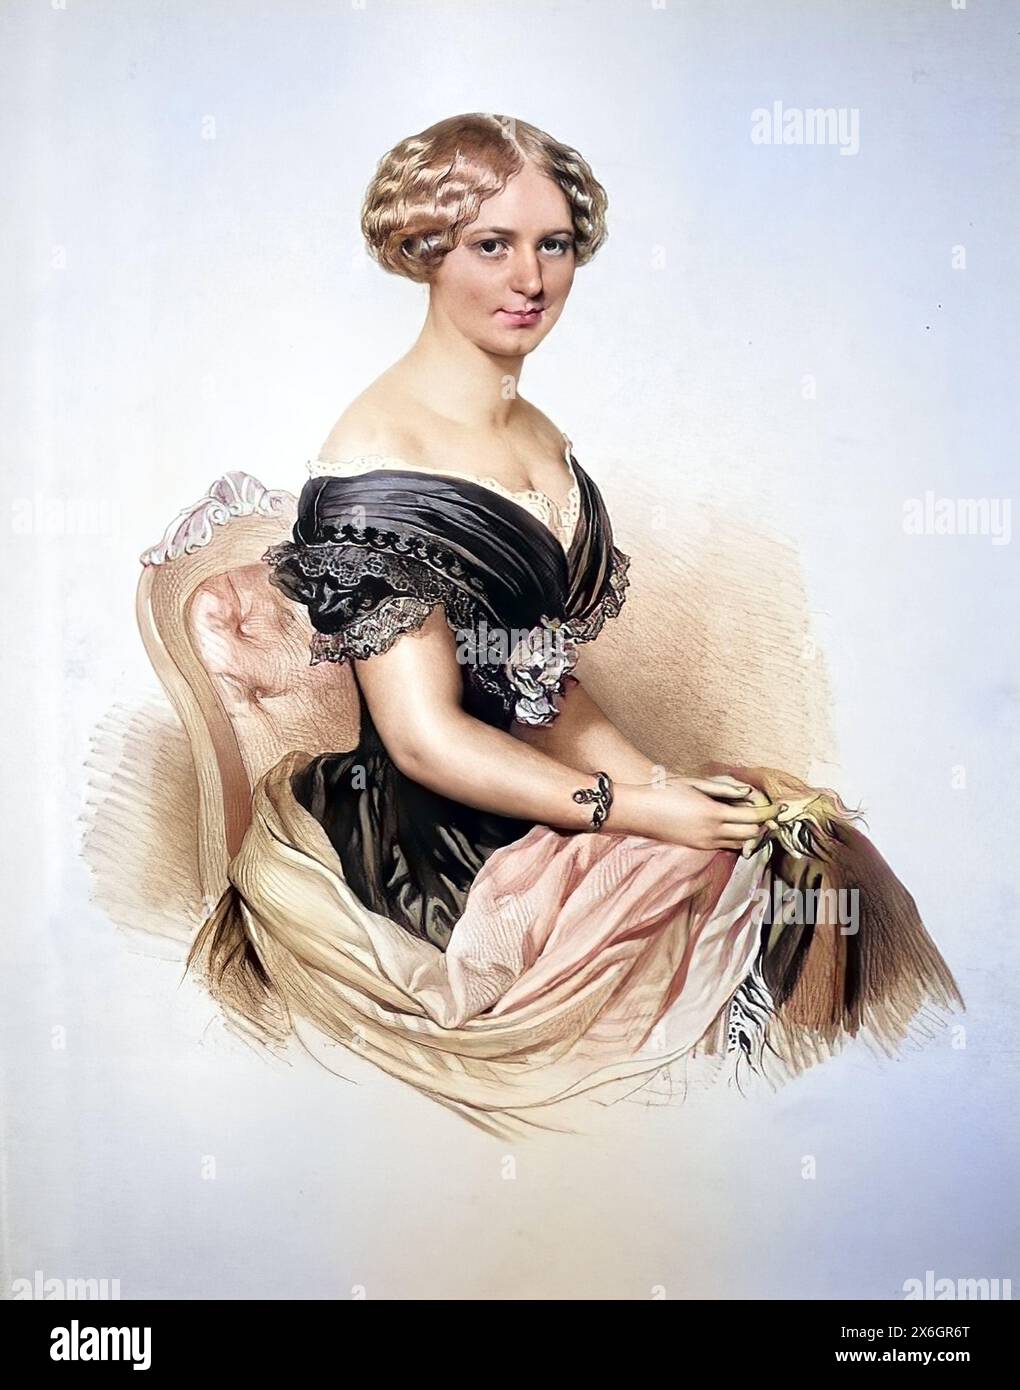 Albina Maray (1832-1889), oesterreichische Saengerin, Historisch, digital restaurierte Reproduktion von einer Vorlage aus dem 19. Jahrhundert, Record date not stated Stock Photo